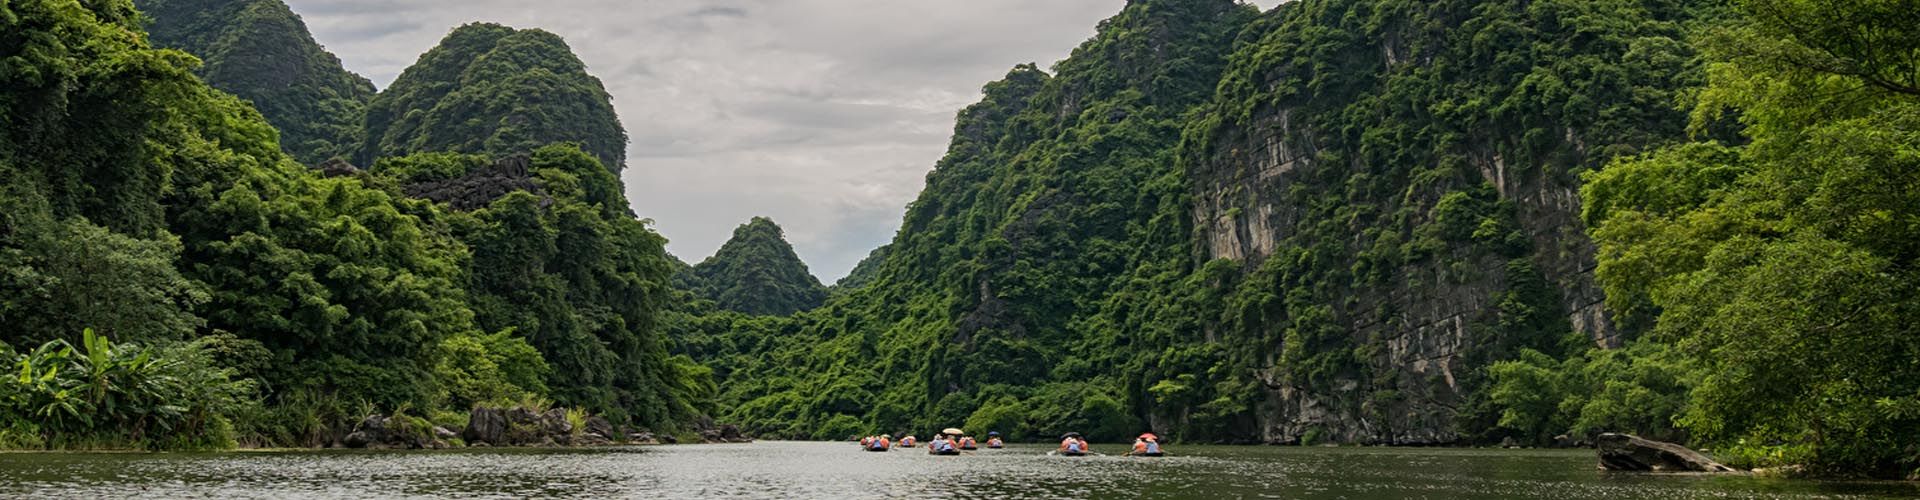 Travel Tips in Vietnam